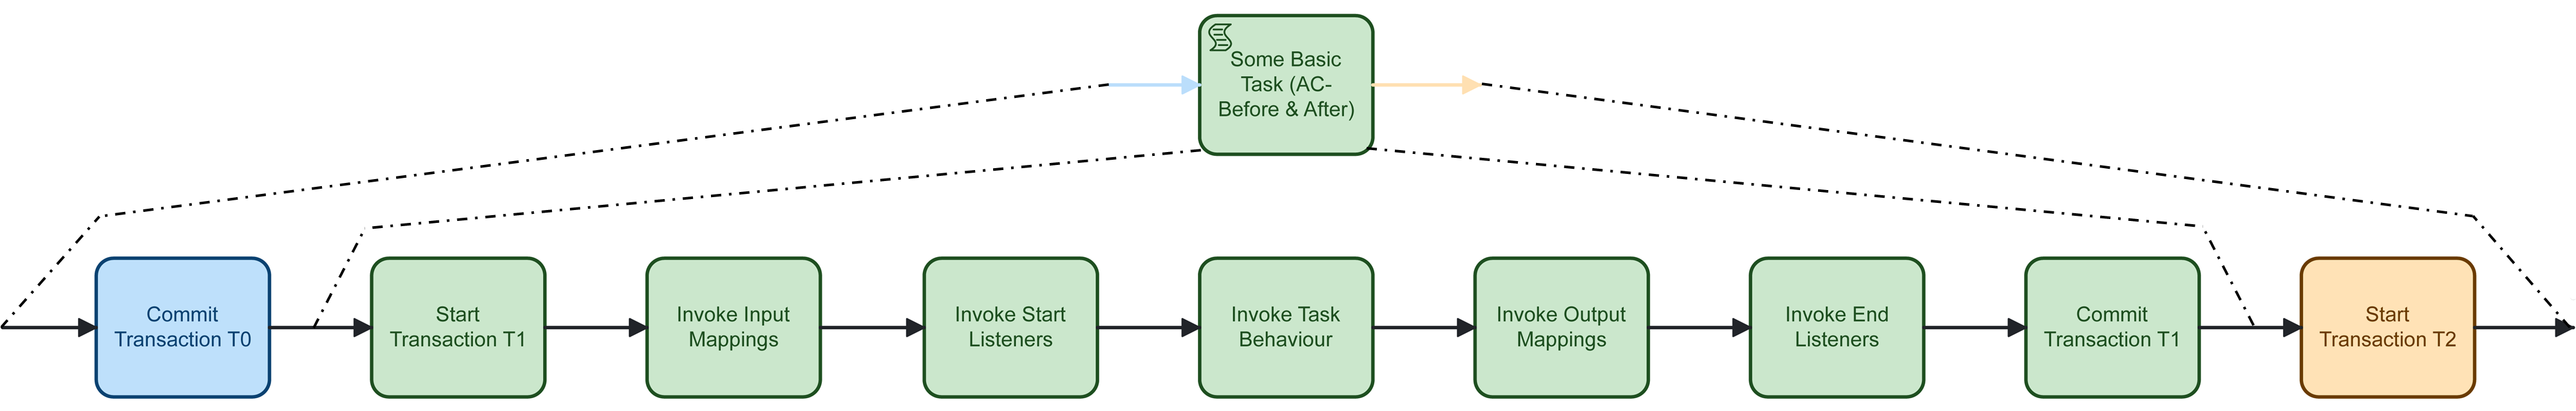 Transaction Boundaries for Basic Tasks